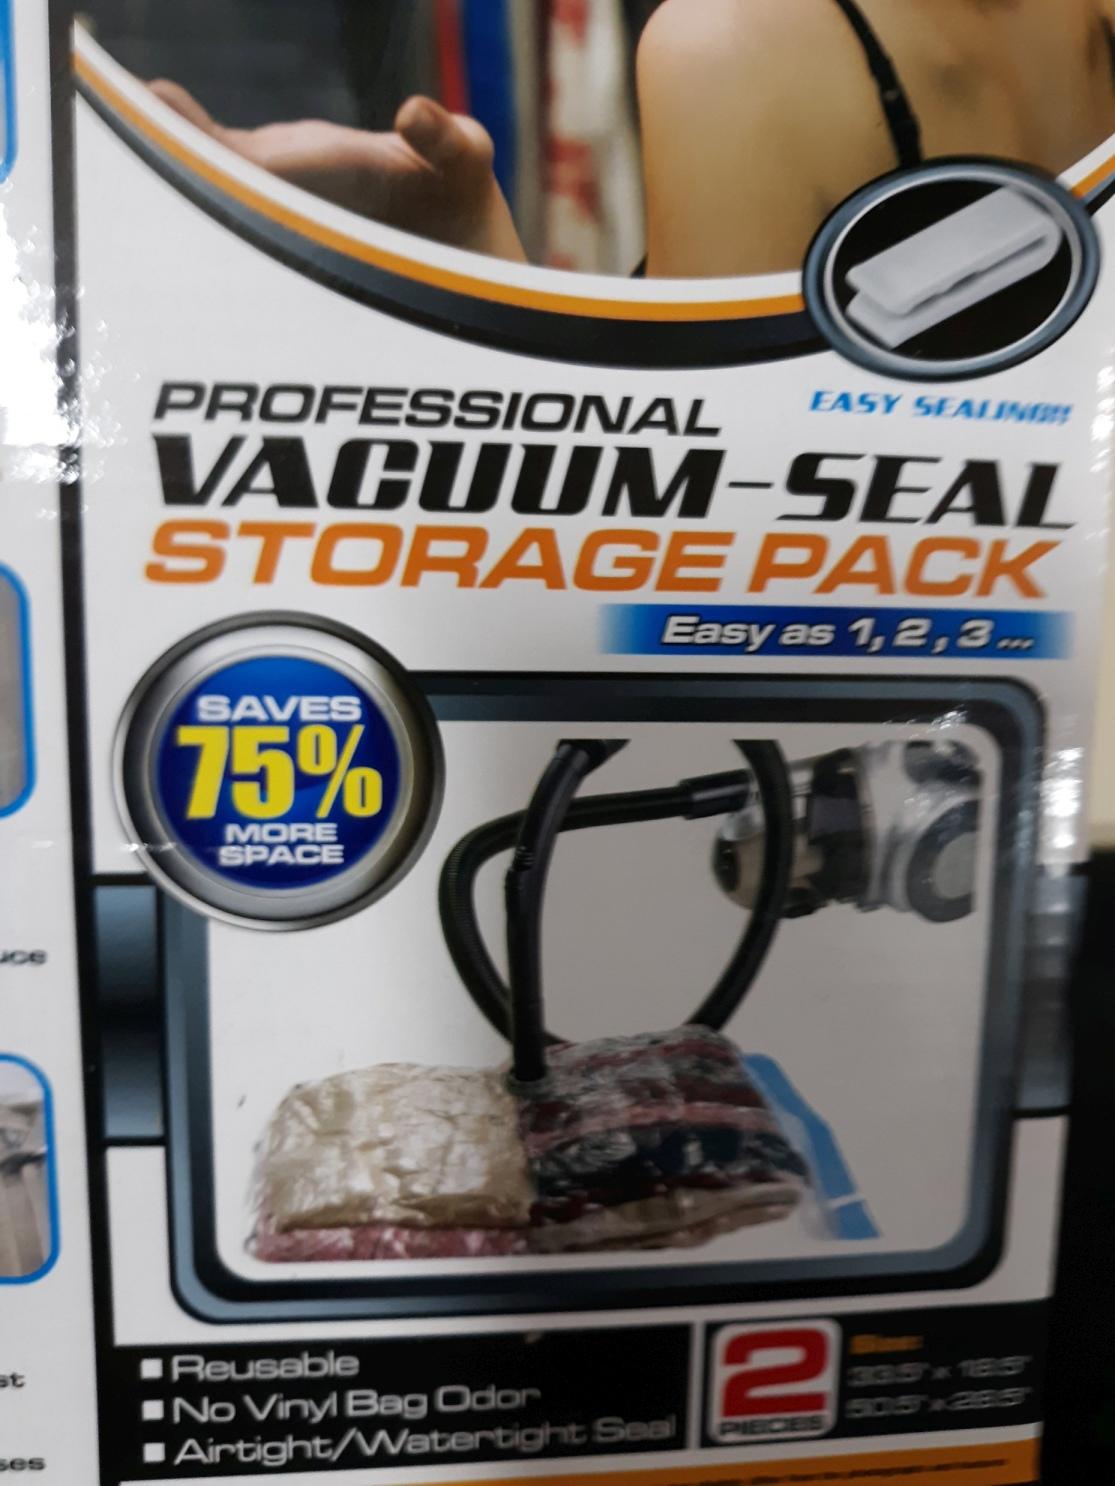 Vacuum Seal Storage Pack